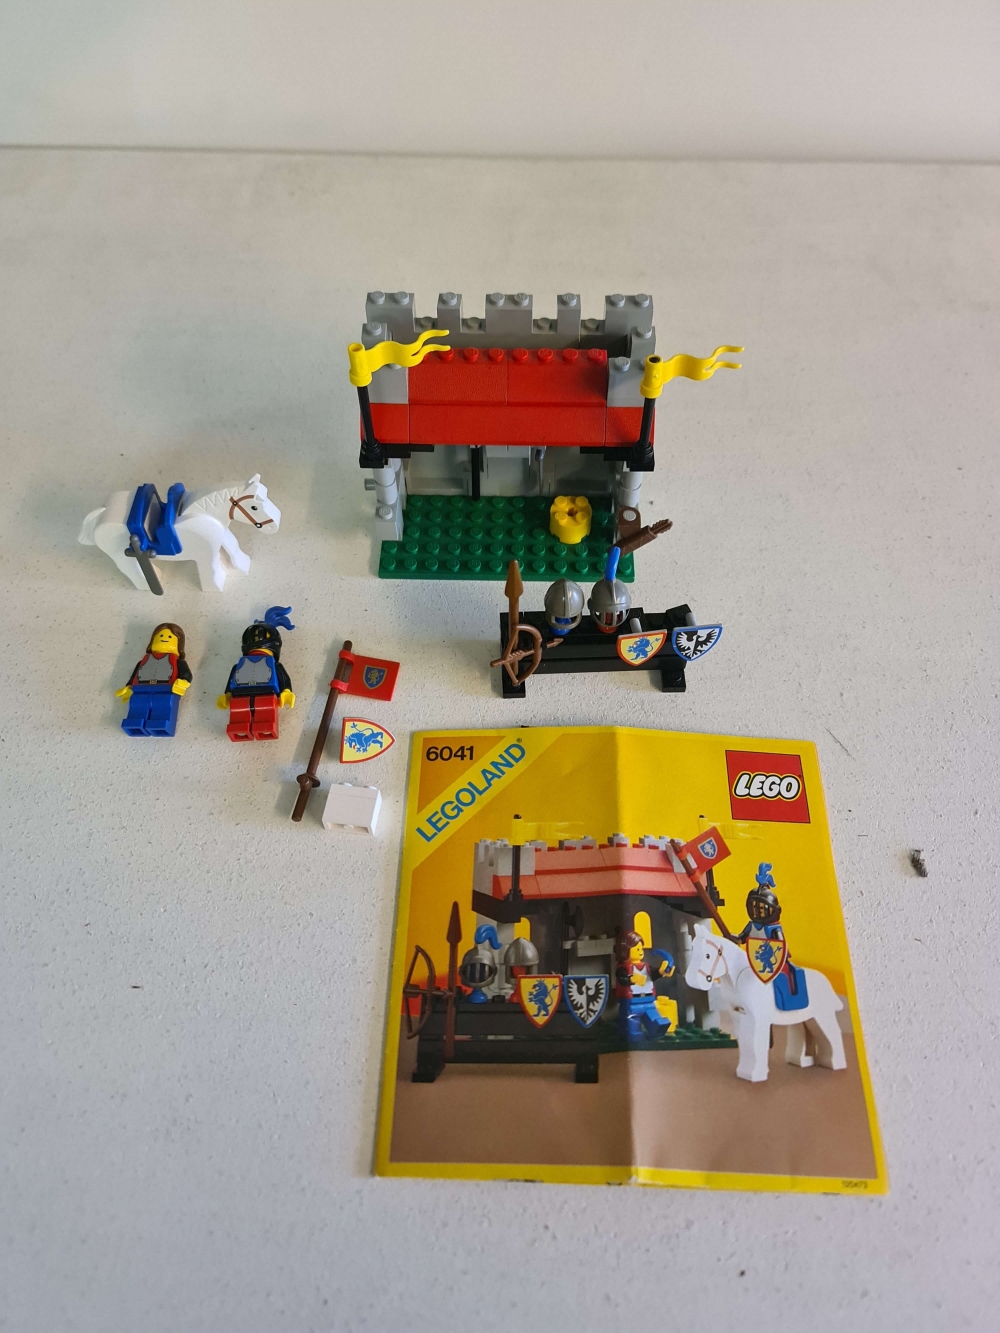 Sett 6041 fra Lego Castle : Lion Knights serien.
Veldig fint sett. Mangler sort sverd, ellers komplett.
Byttet til grått sverd.
Med manual.